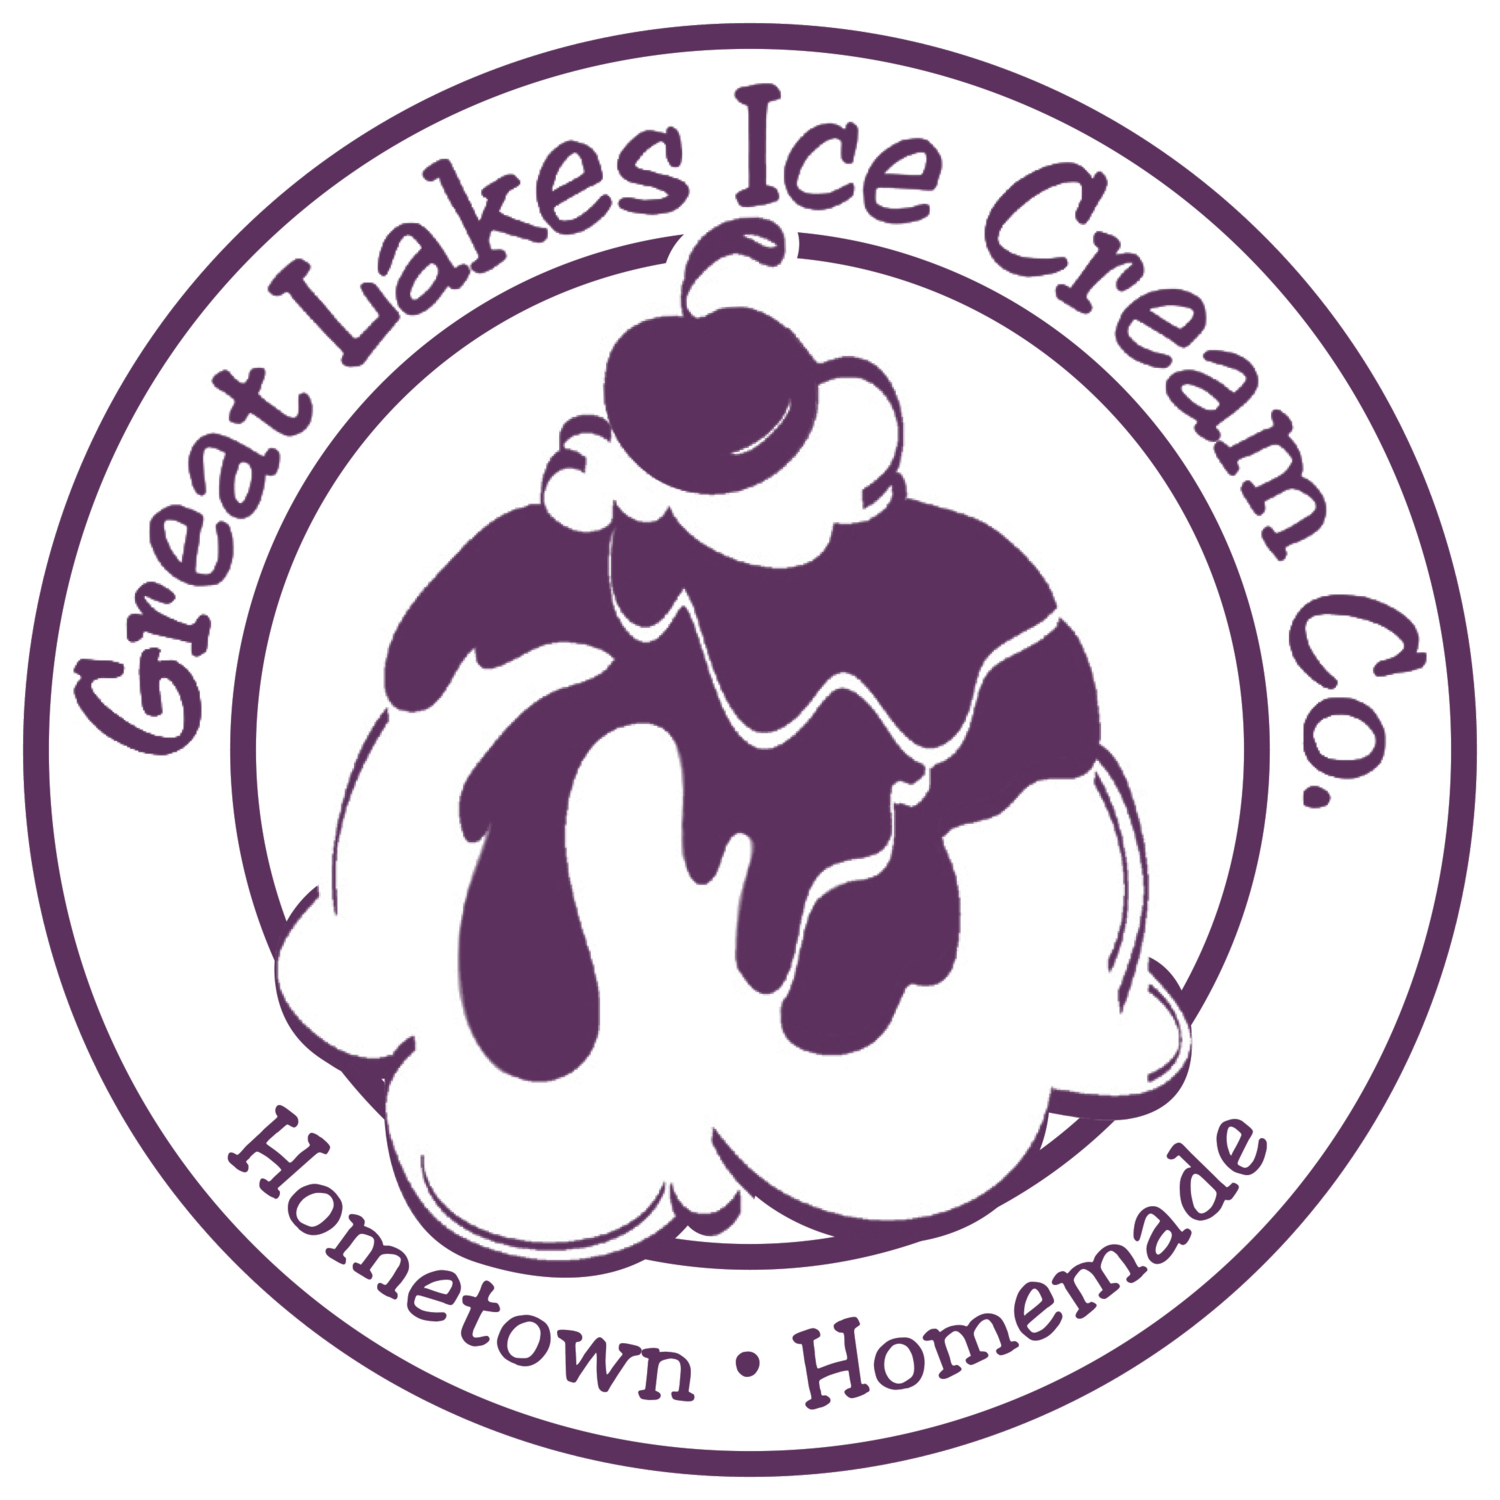 Ice Cream Company Logo - Great Lakes Ice Cream Company